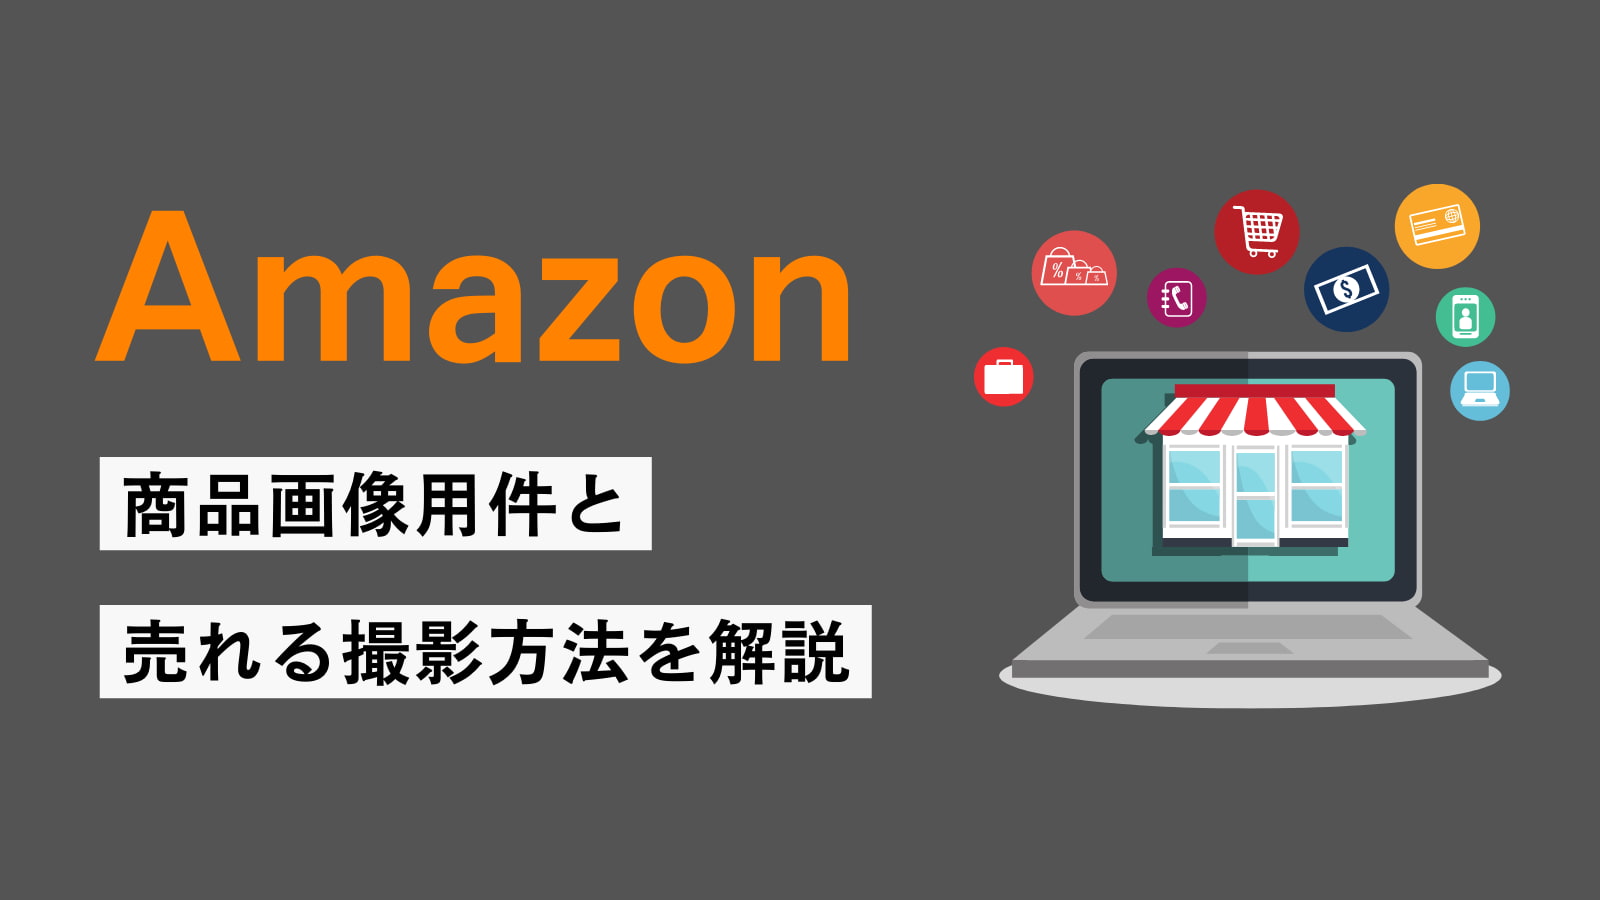 【Amazon出品者向け】Amazonの商品画像要件と売上がアップする撮影方法を解説